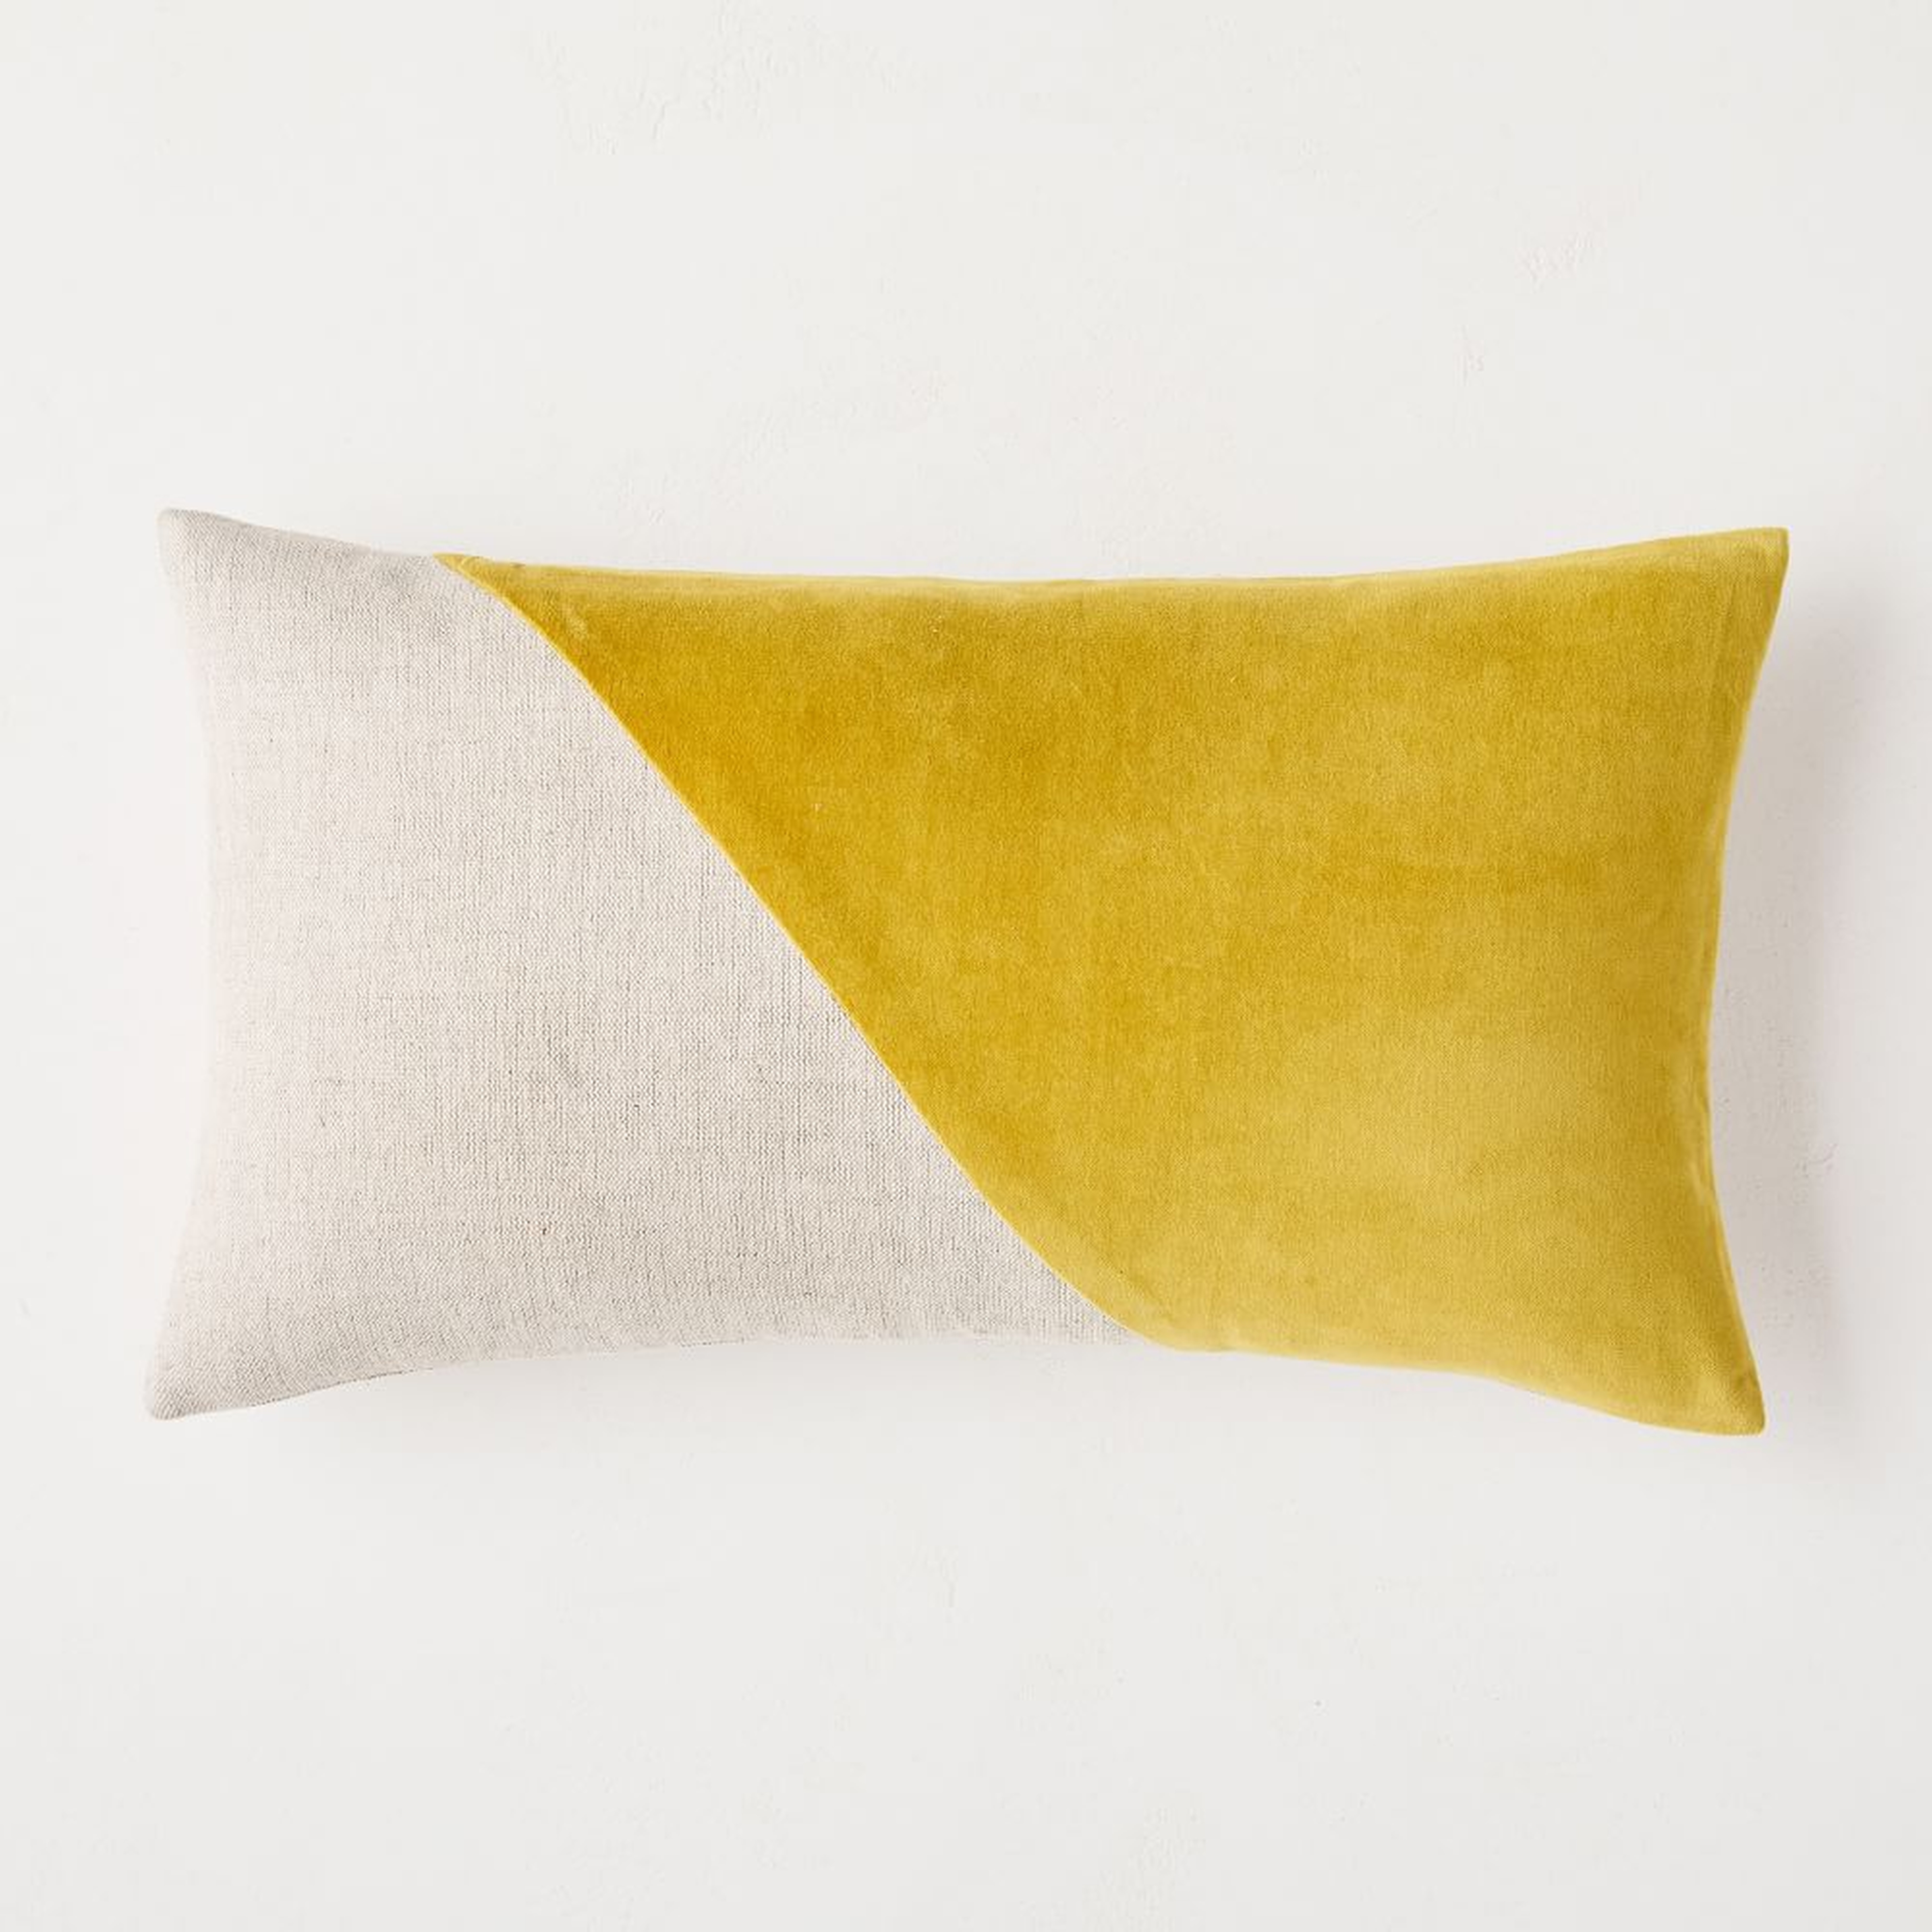 Cotton Linen + Velvet Corners Pillow Cover, 12"x21", Dark Horseradish, Set of 2 - West Elm